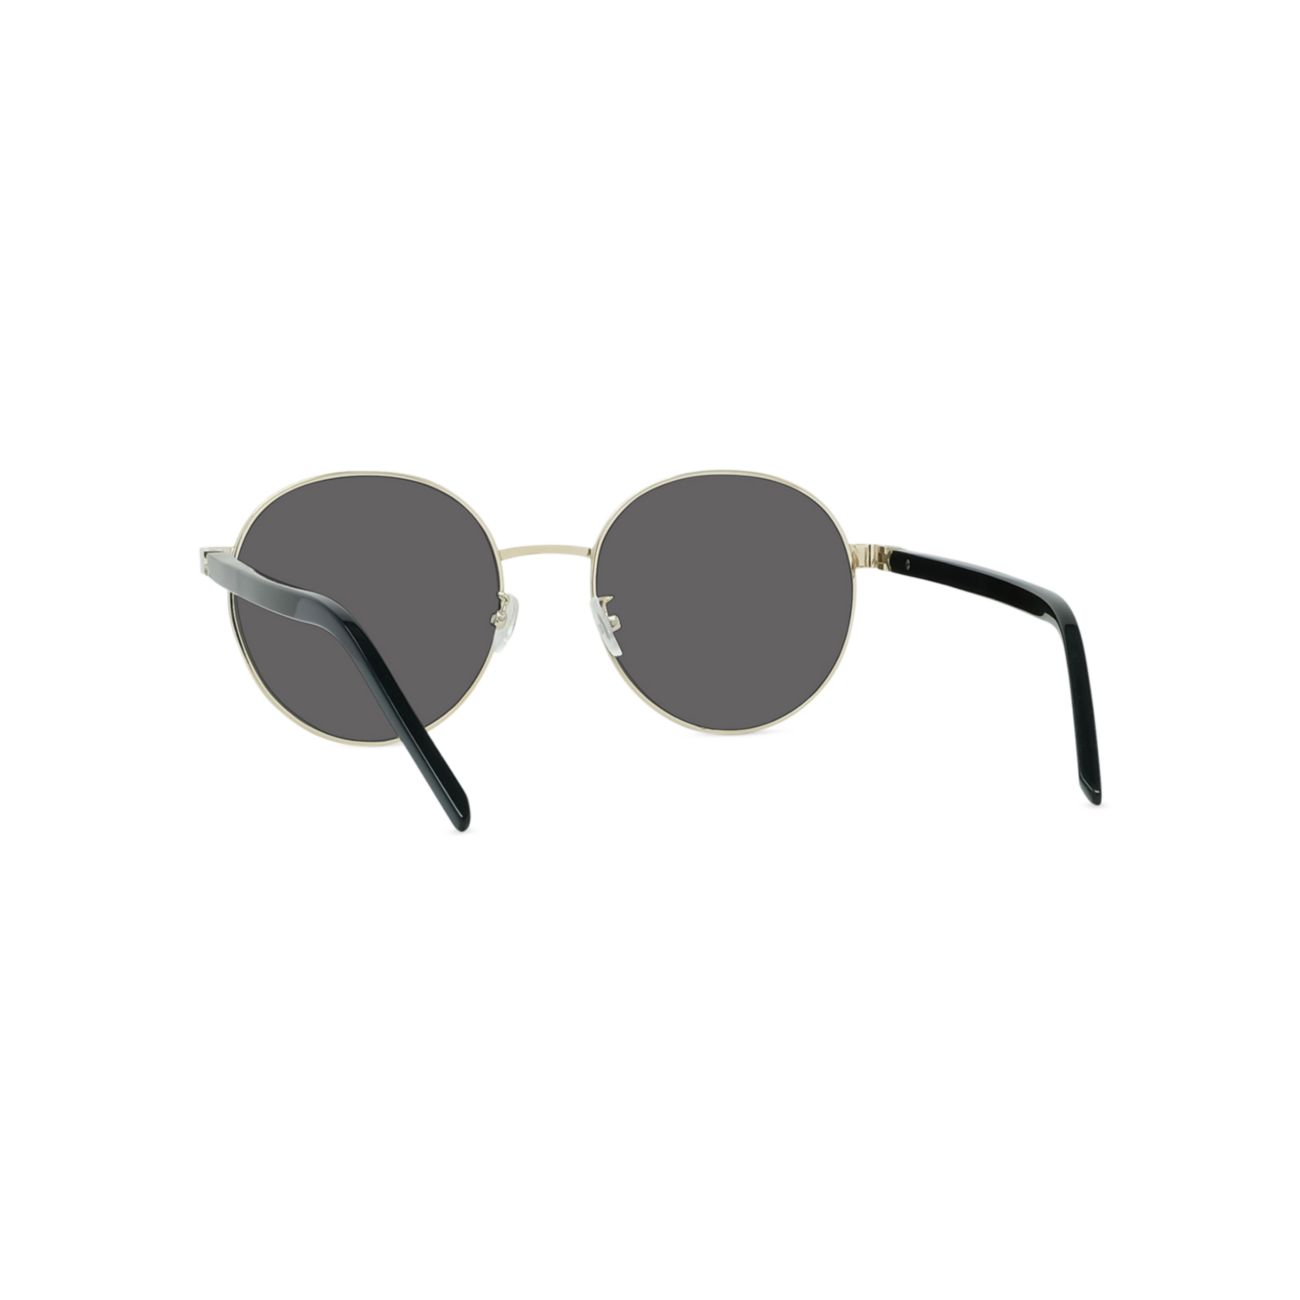 Круглые солнцезащитные очки 56 мм KENZO